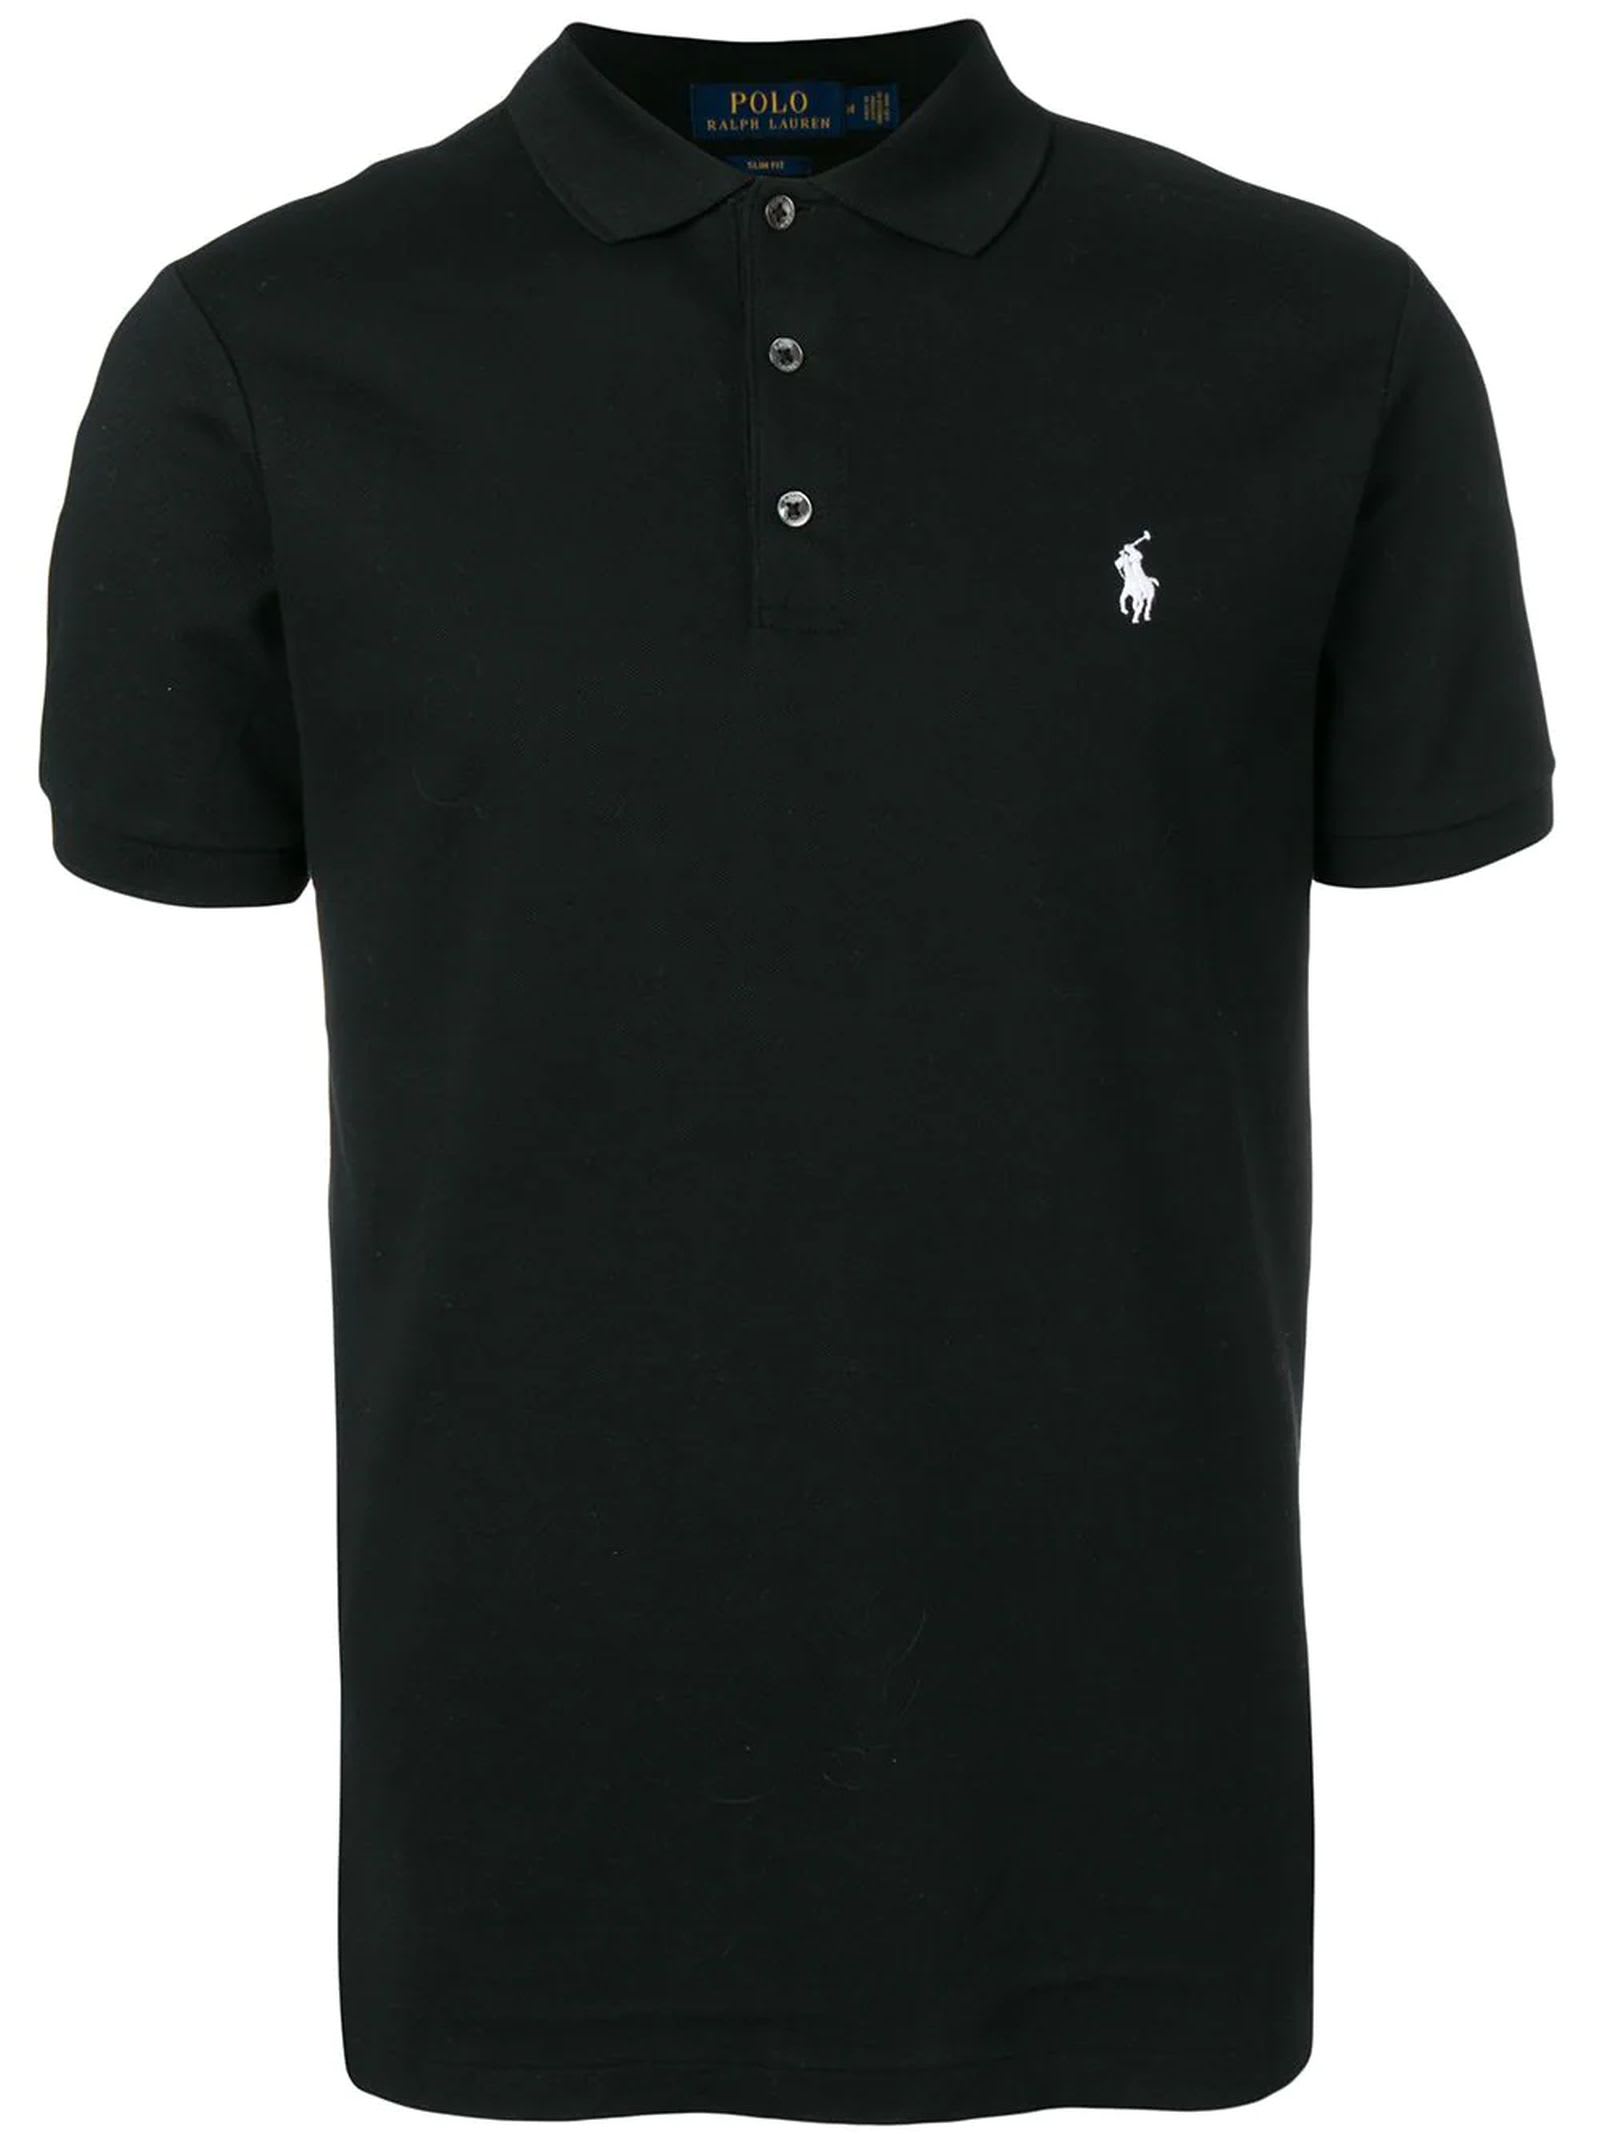 Ralph Lauren Black Cotton Blend Polo Shirt